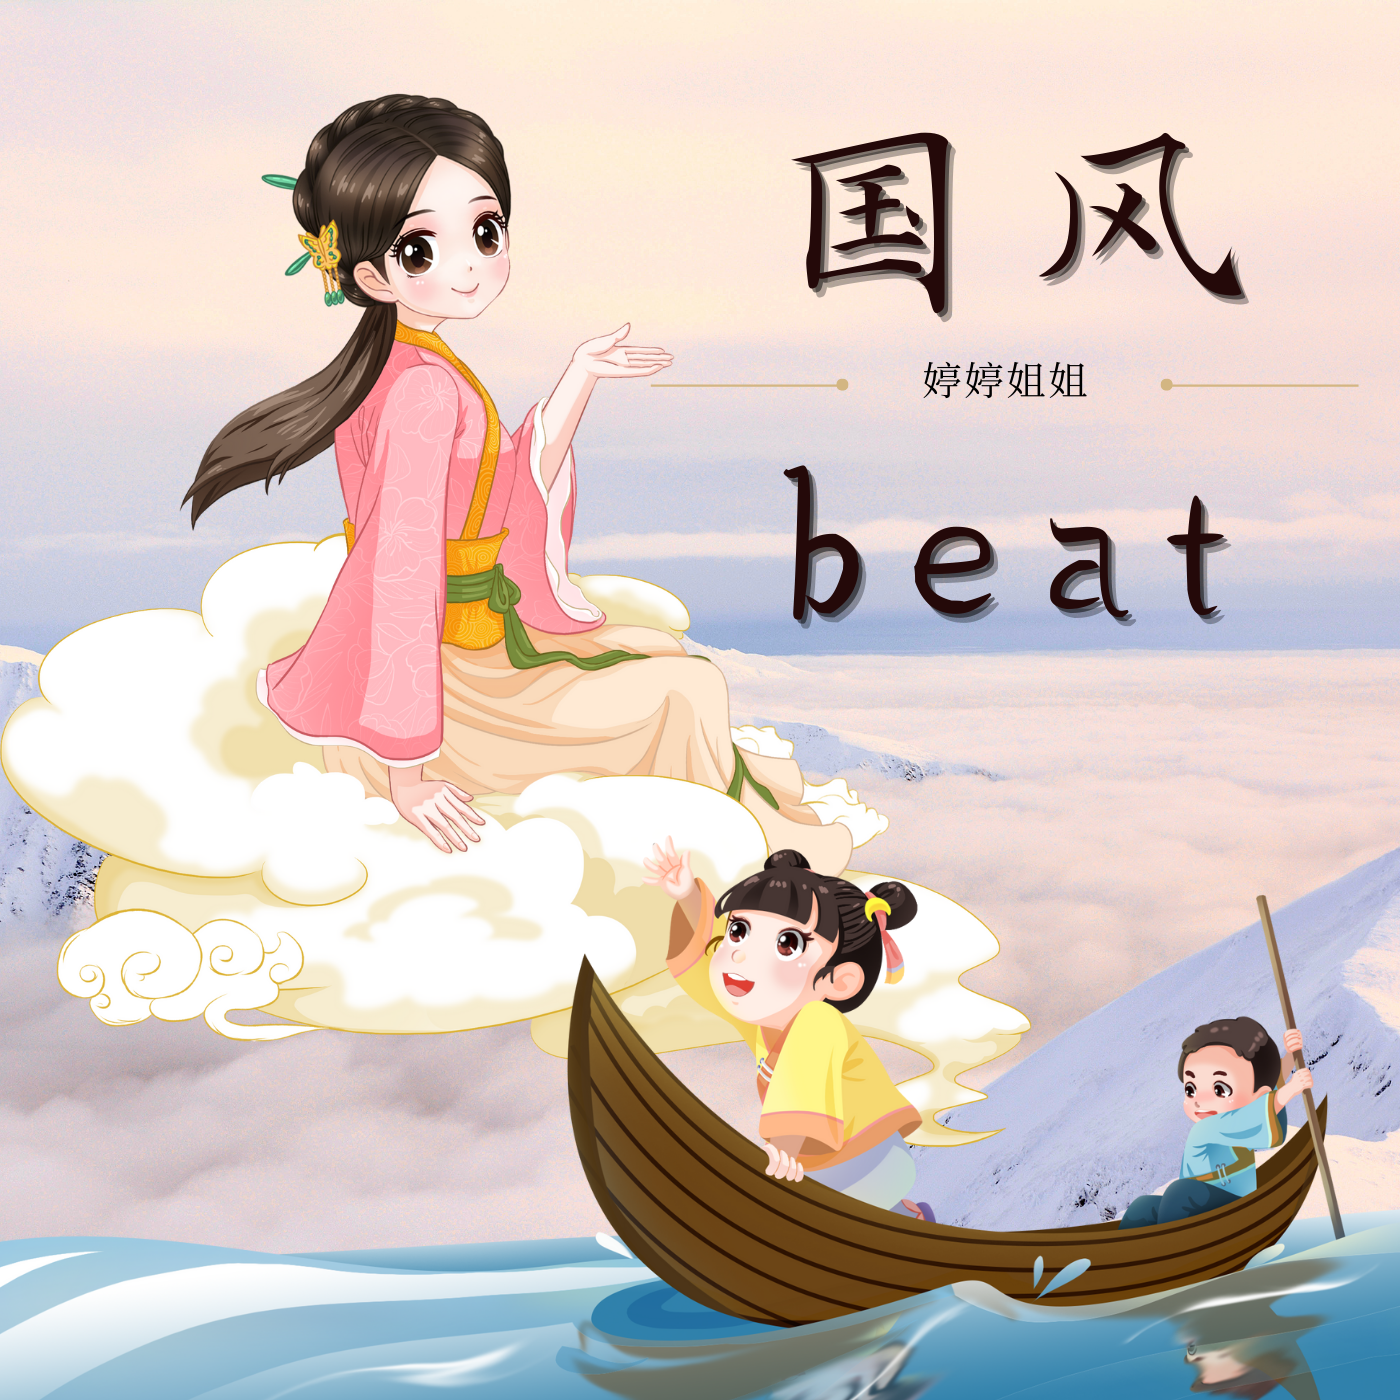 婷婷姐姐 - “忆江南”-中国风/Chinese type beat-BPM130